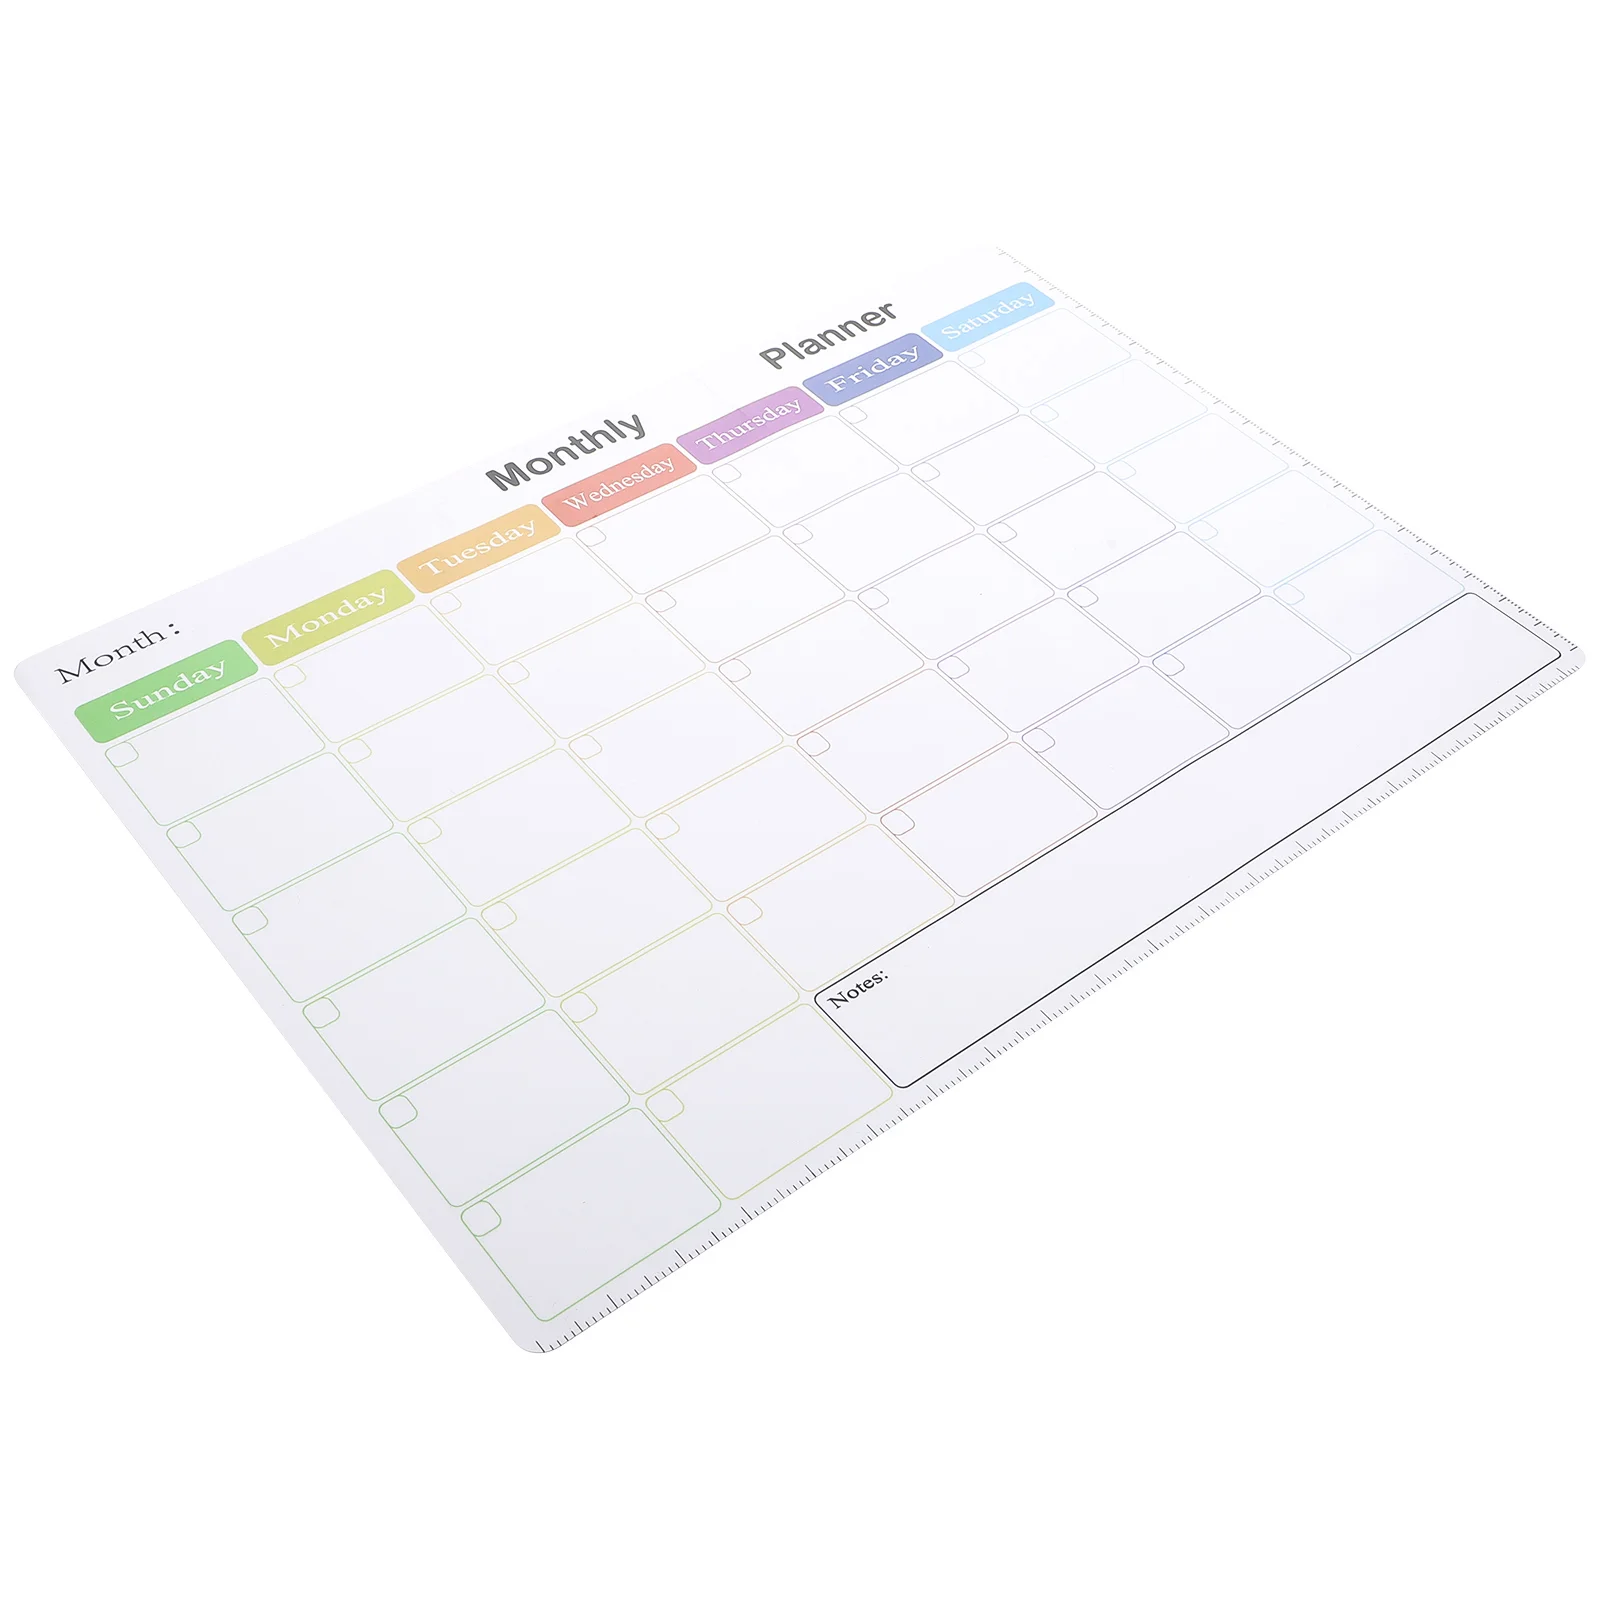 

Органайзер на холодильник, магнитный календарь для планирования месяца, экологически чистый резиновый материал